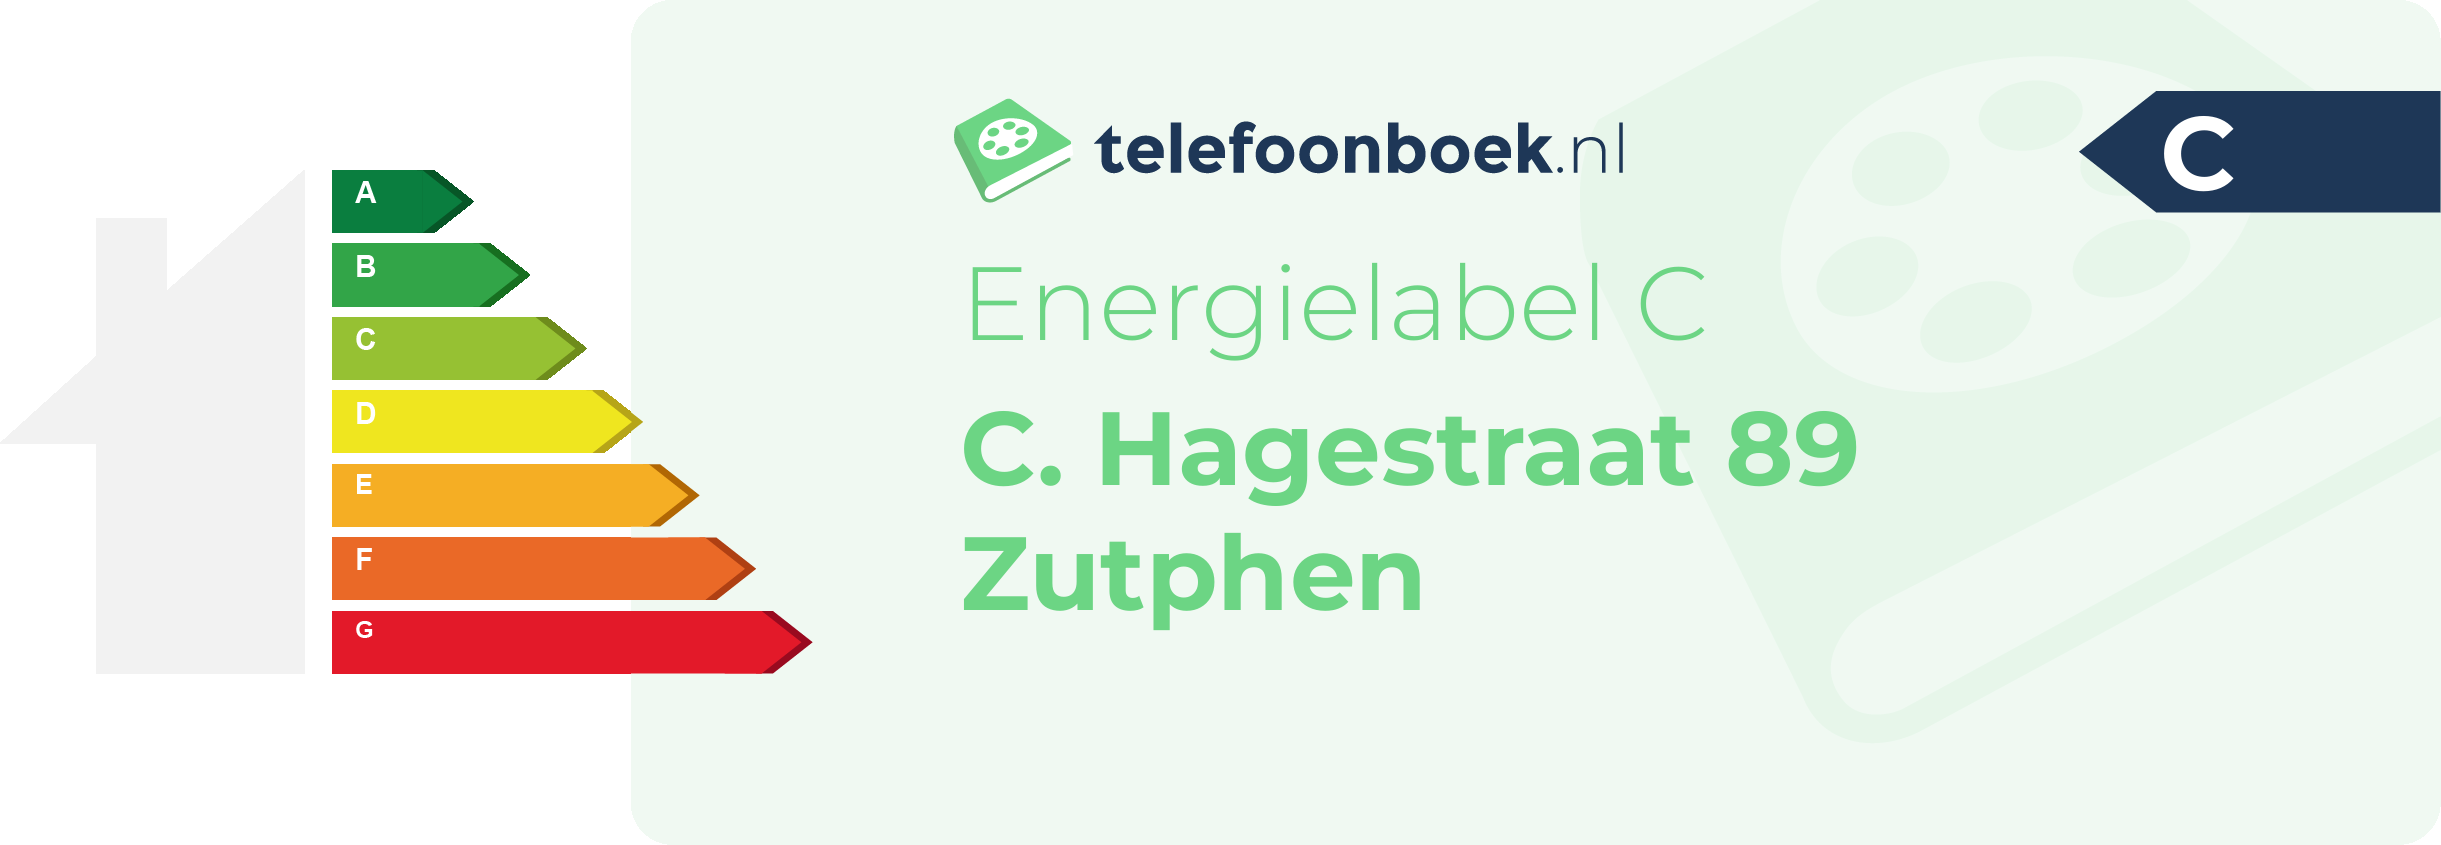 Energielabel C. Hagestraat 89 Zutphen